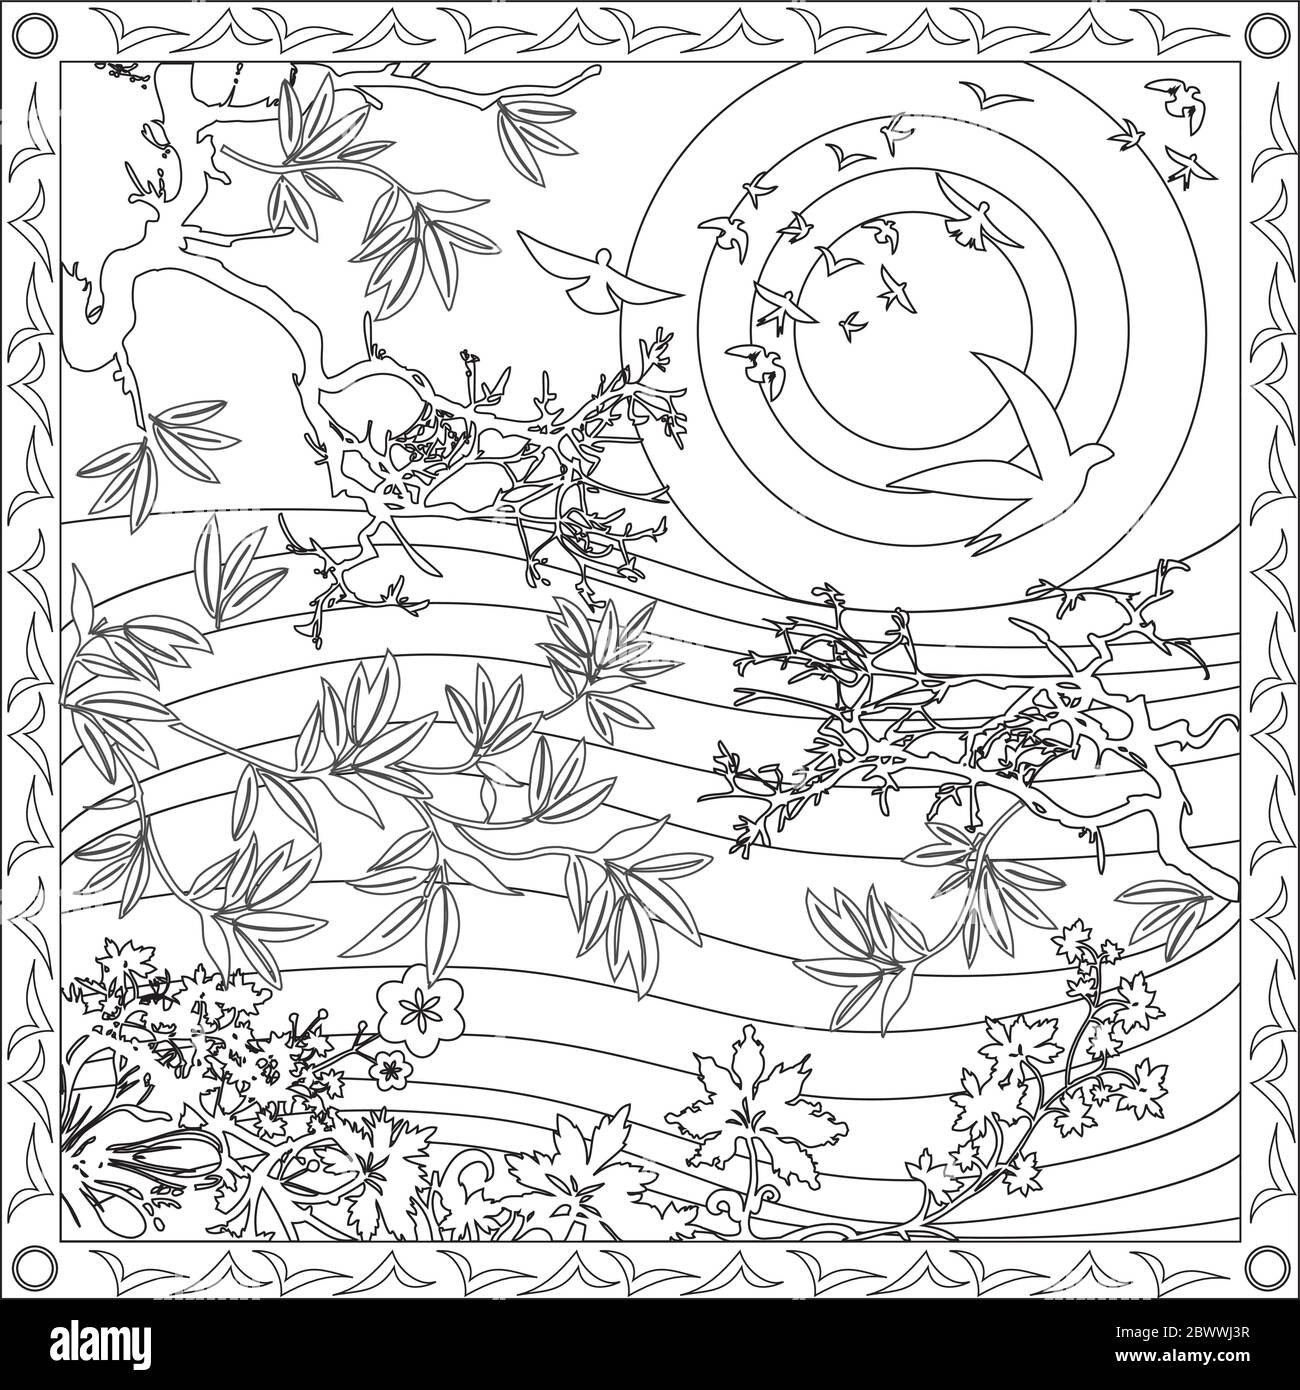 Malseite Illustration im quadratischen Format für Erwachsene, japanischer Stil mit Vögeln und Sonnenuntergang Stock Vektor